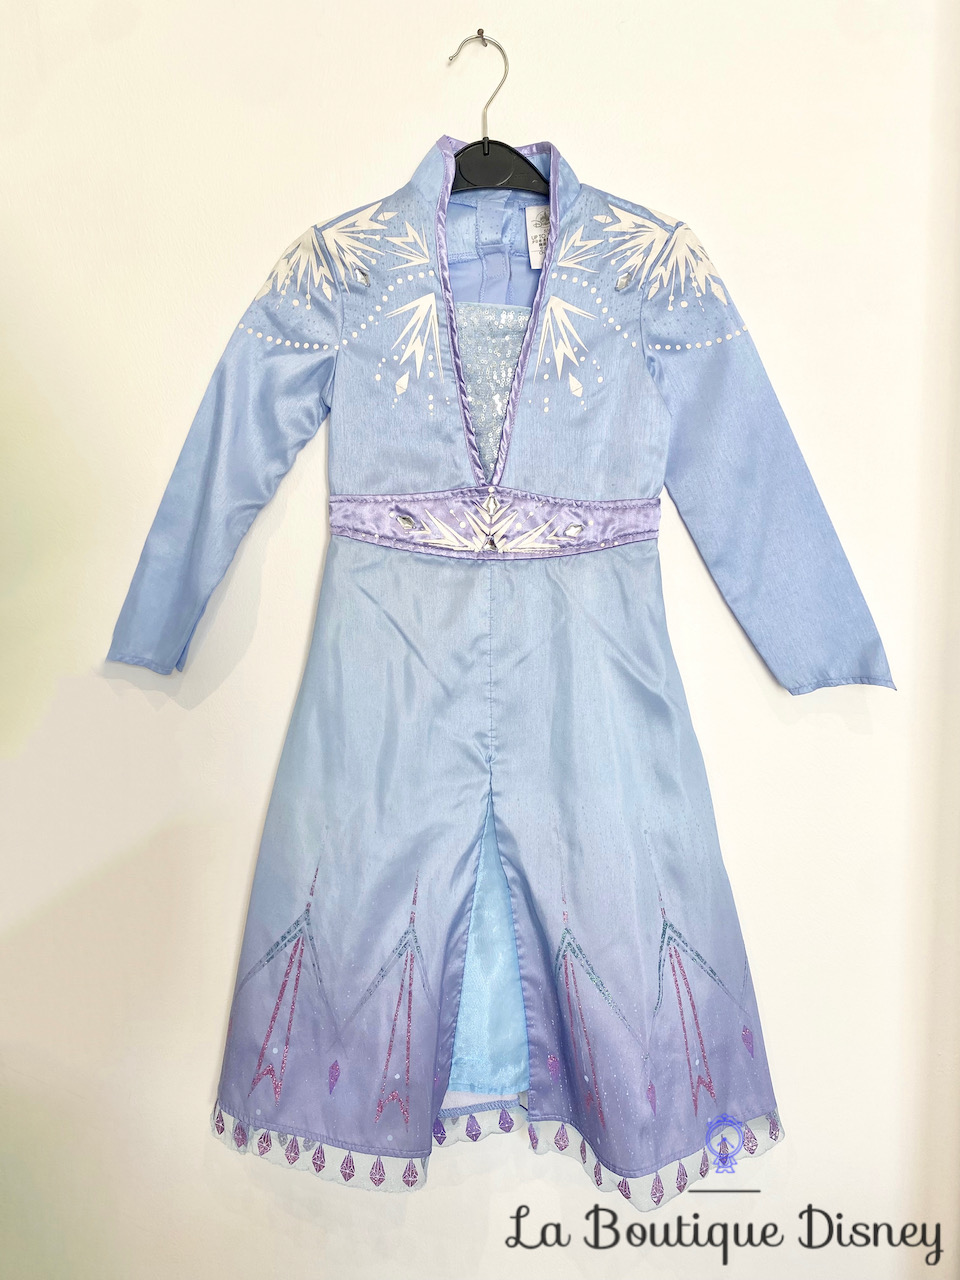 Déguisement Elsa La reine des neiges 2 Disney Store taille 6 ans robe bleu paillettes